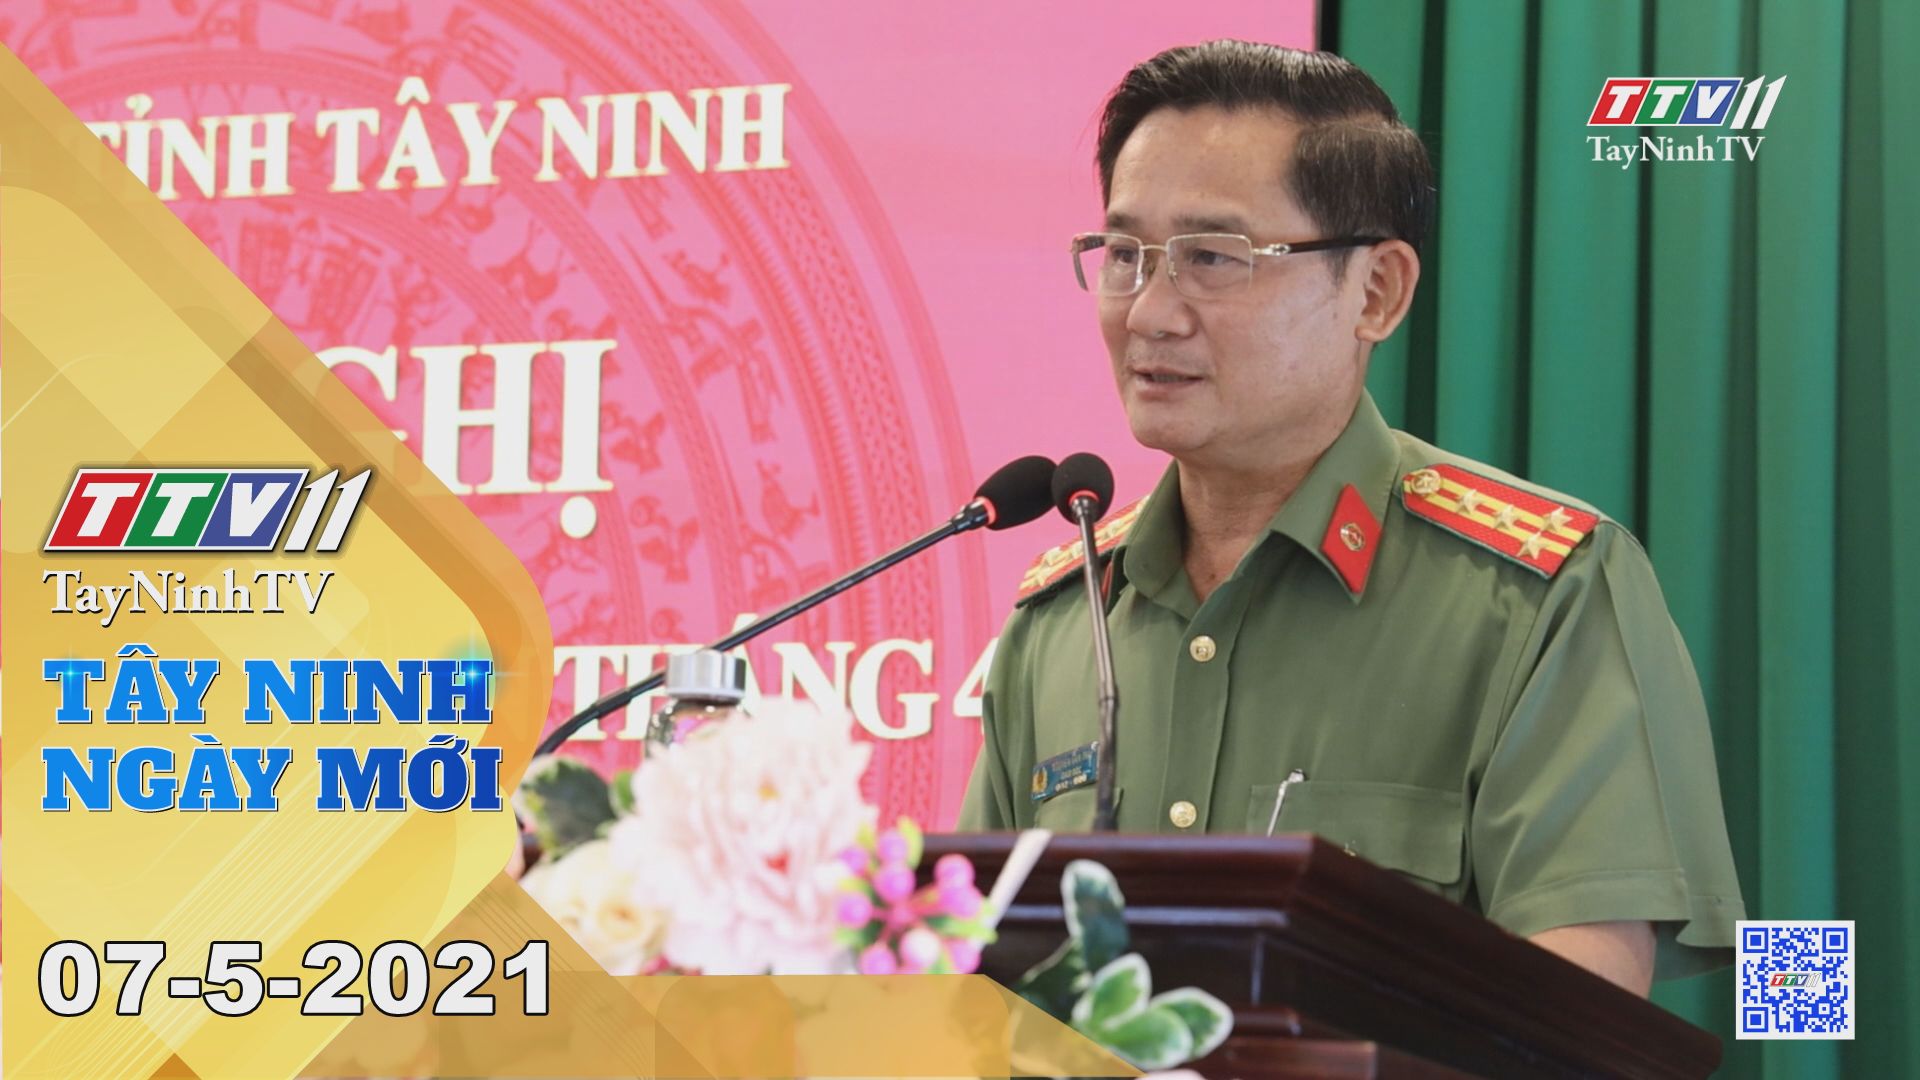 Tây Ninh Ngày Mới 07-5-2021 | Tin tức hôm nay | TayNinhTV